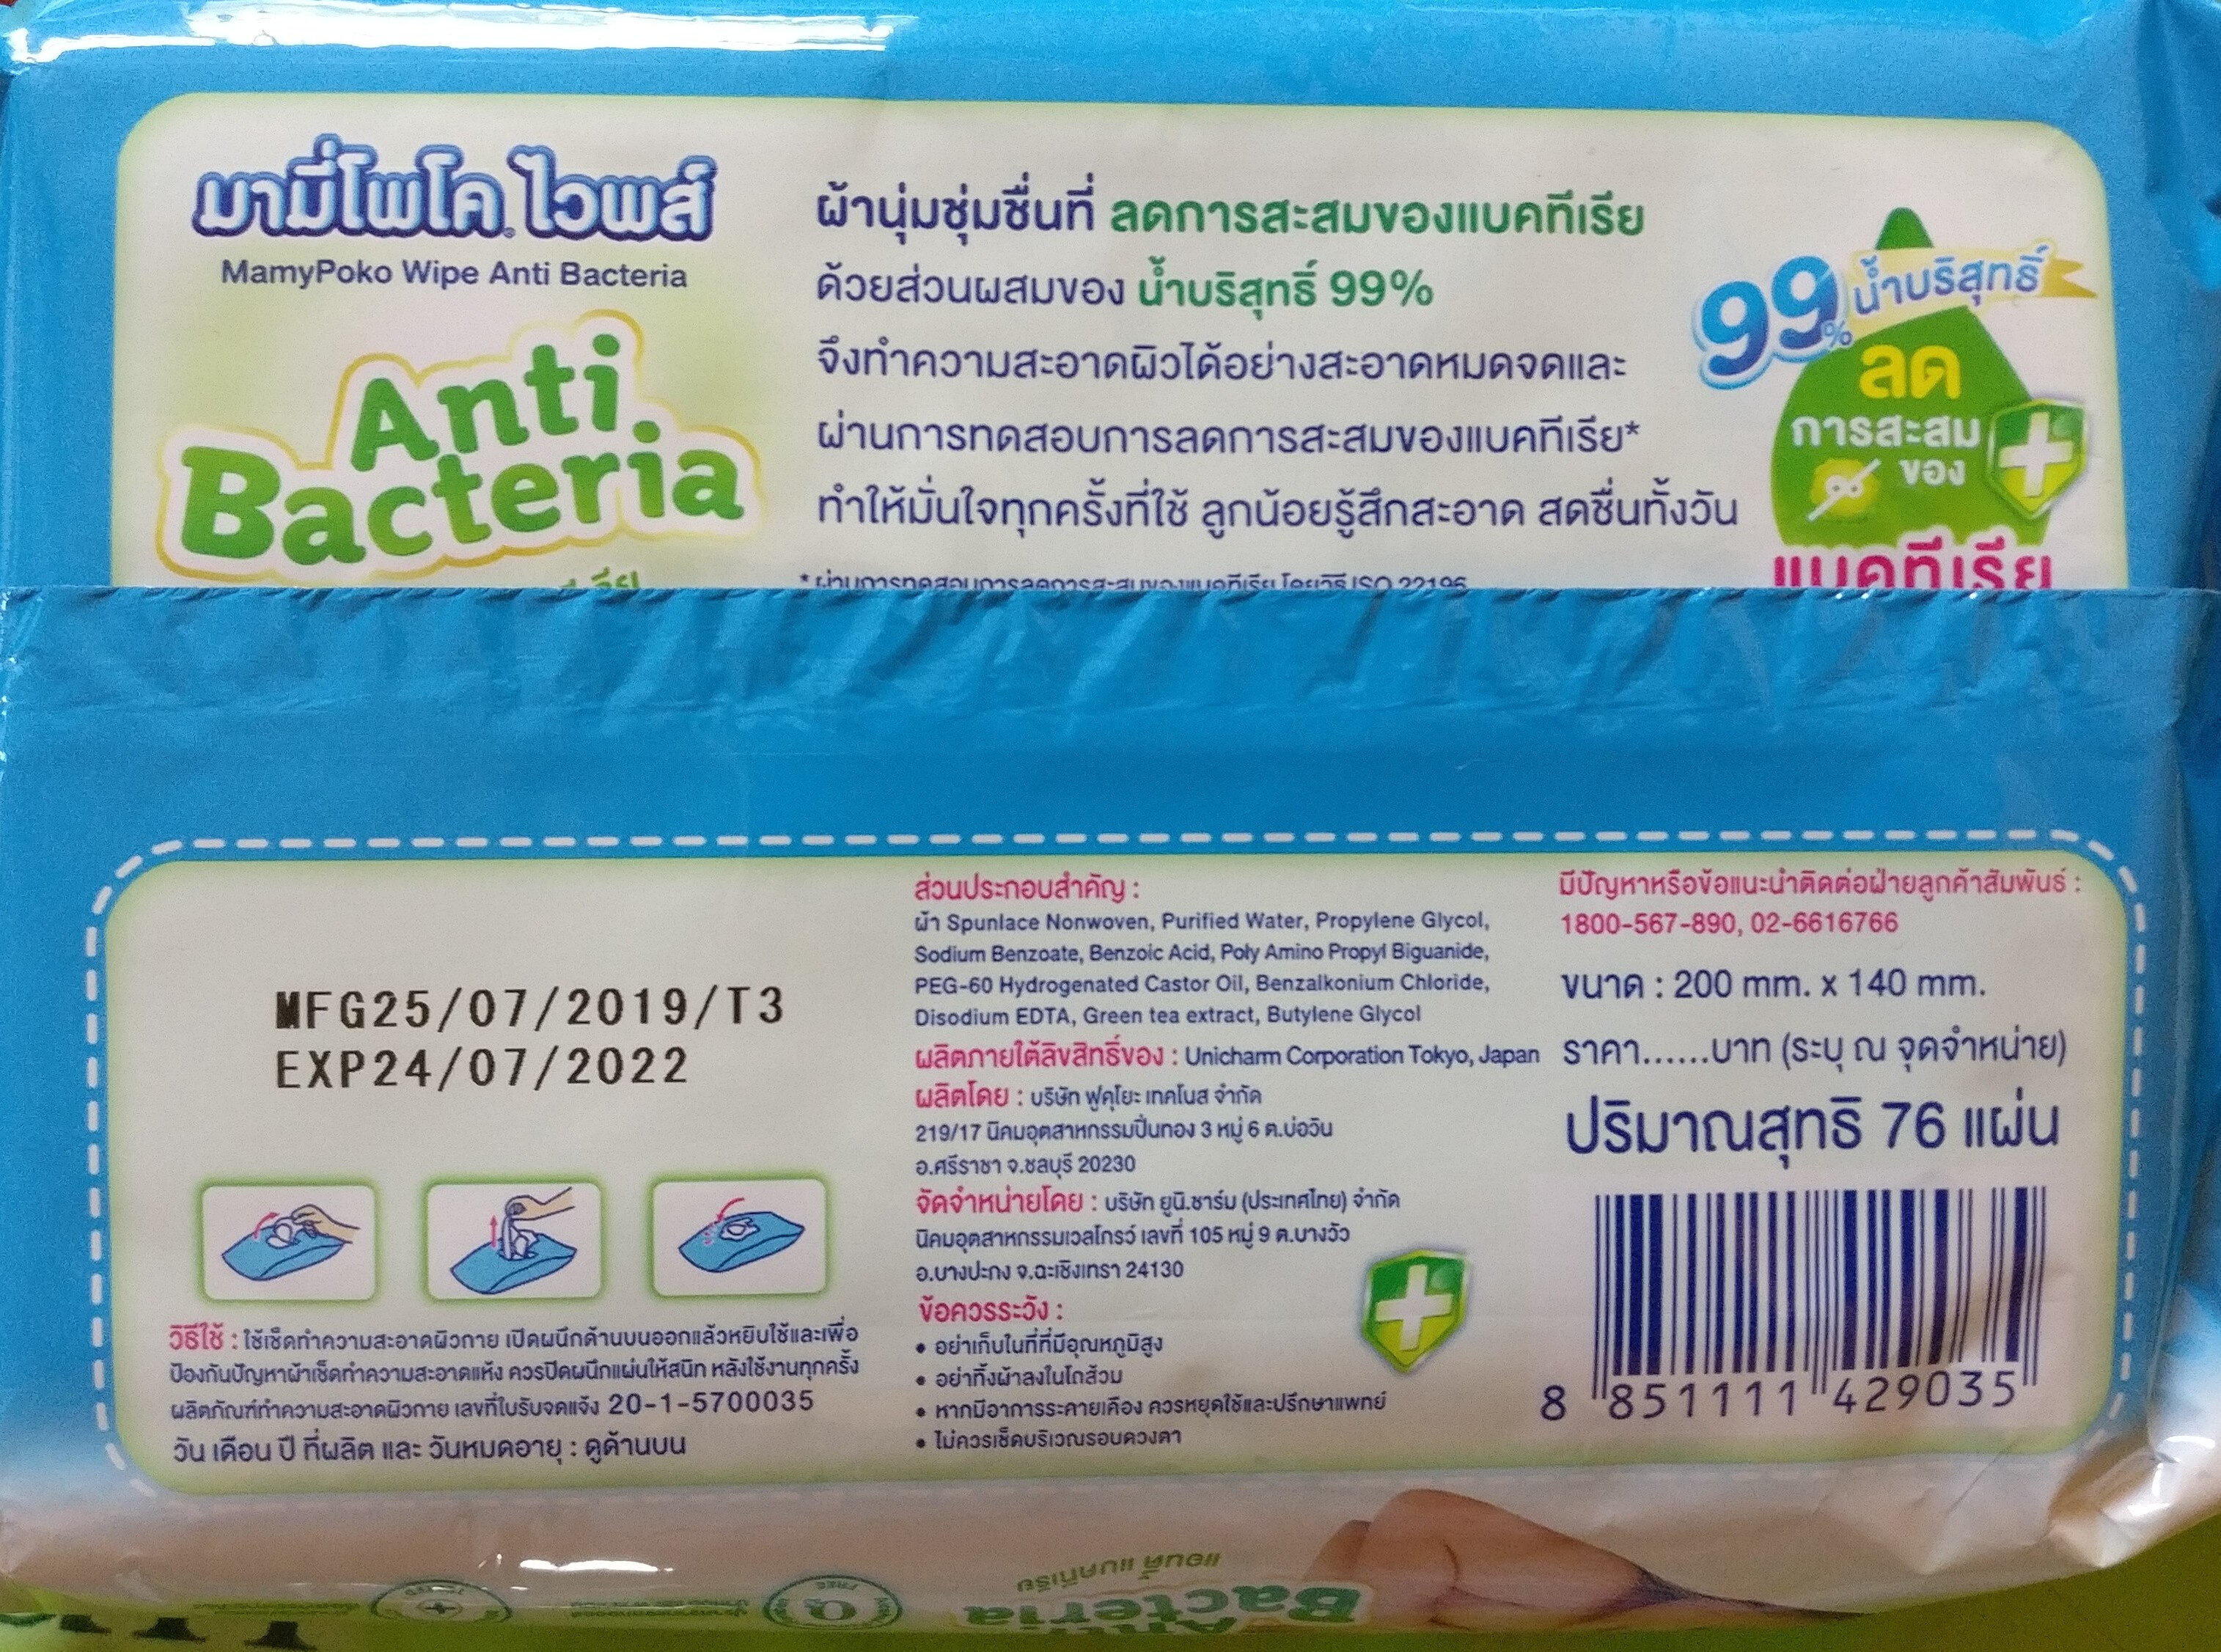 MamyPoko wipe anti bacteria - Product - en